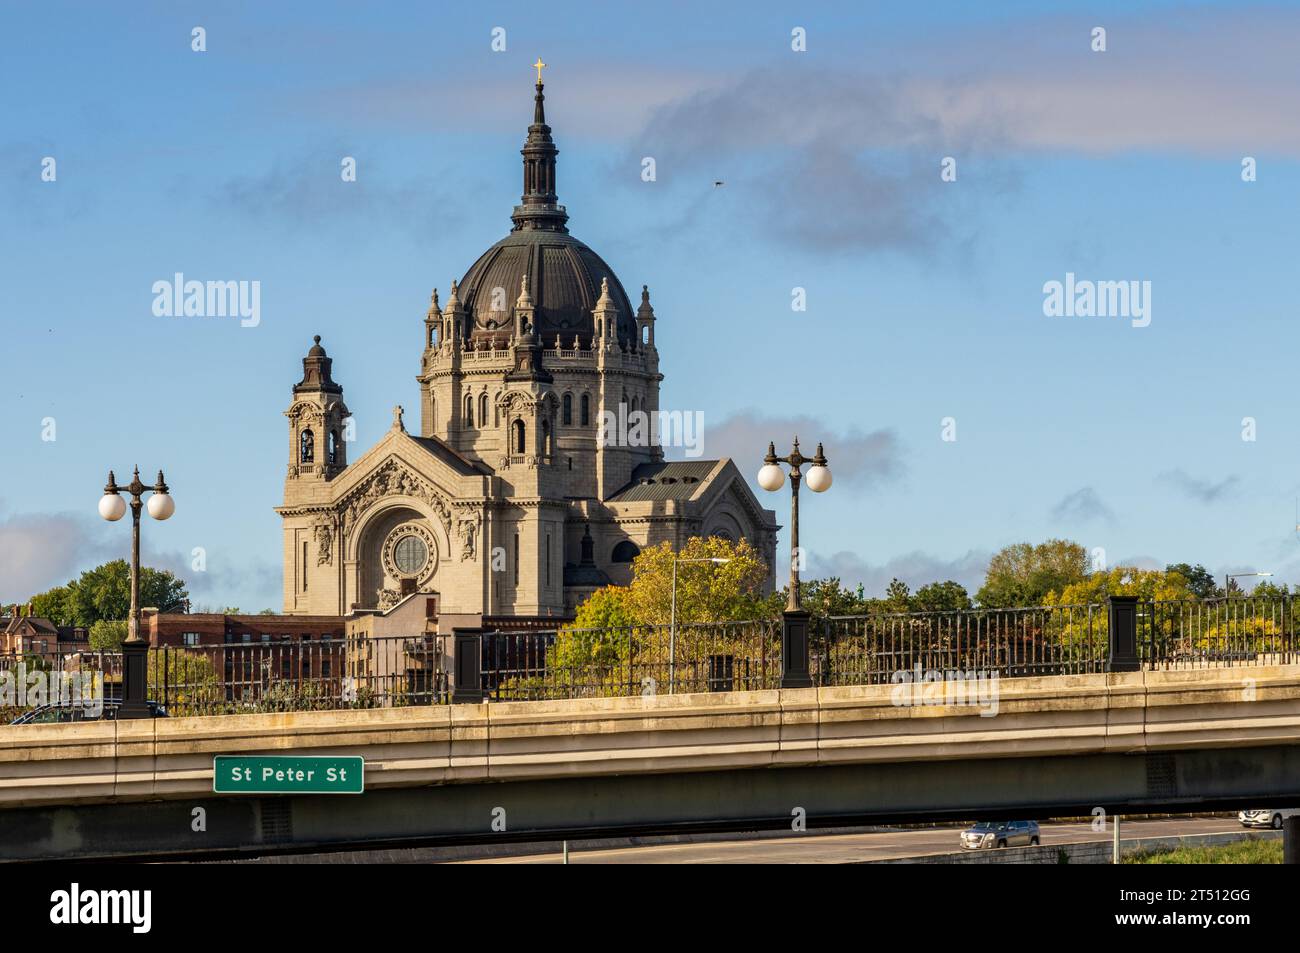 Kathedrale St. Paul in St. Paul Minnesota über die St. Peter St Brücke gesehen Stockfoto